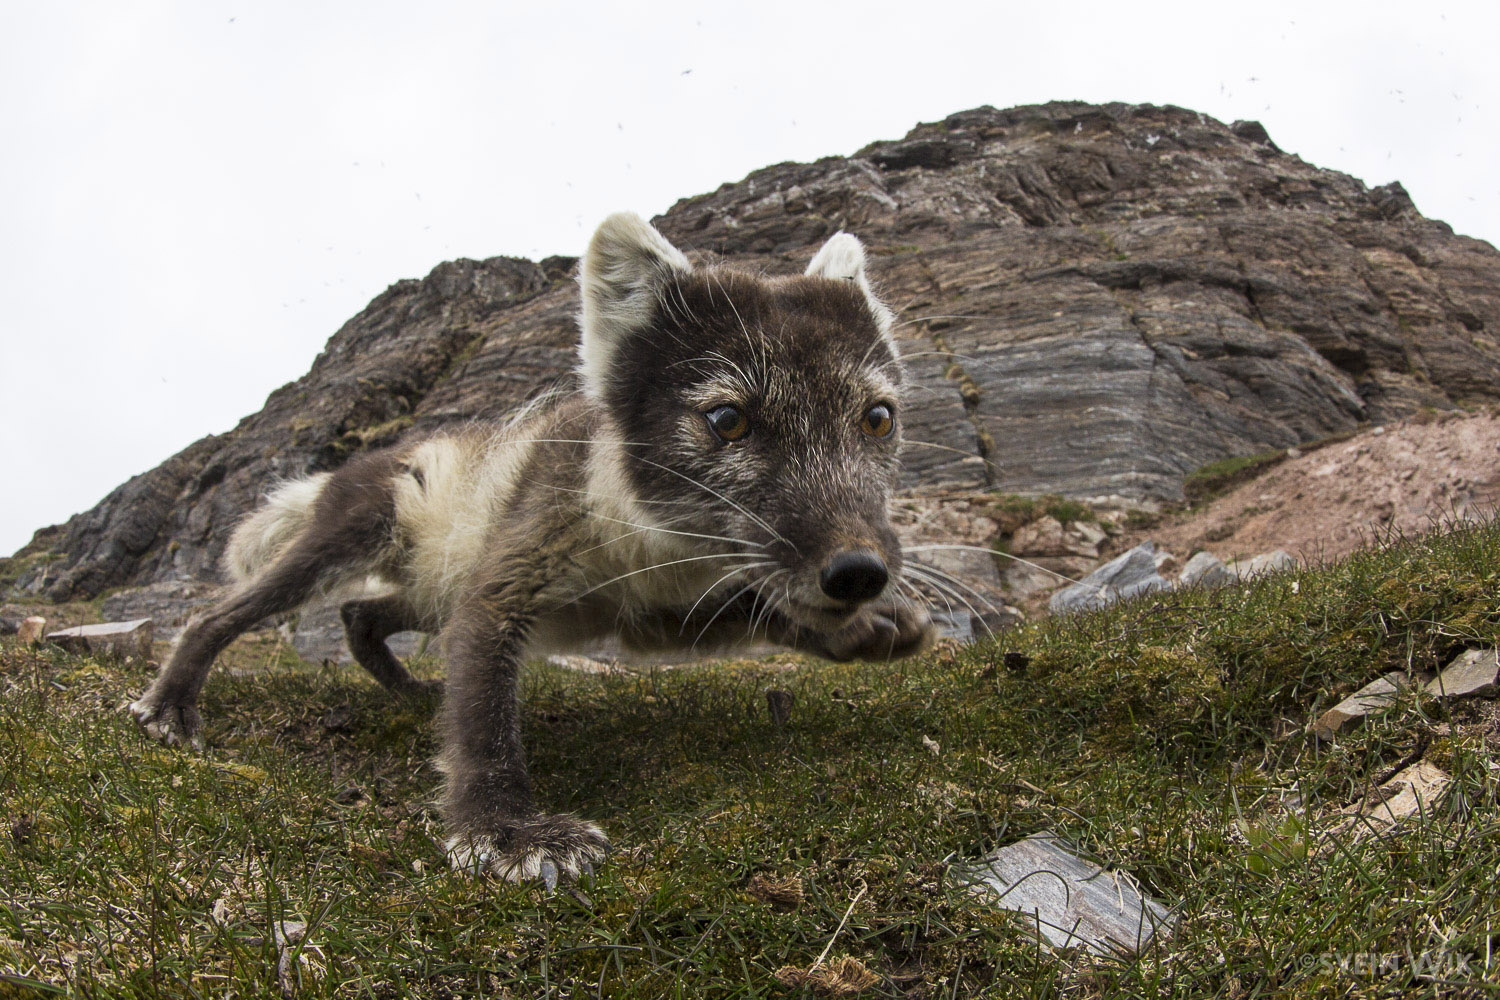 Arctic Fox wideangel by bird cliff.jpg